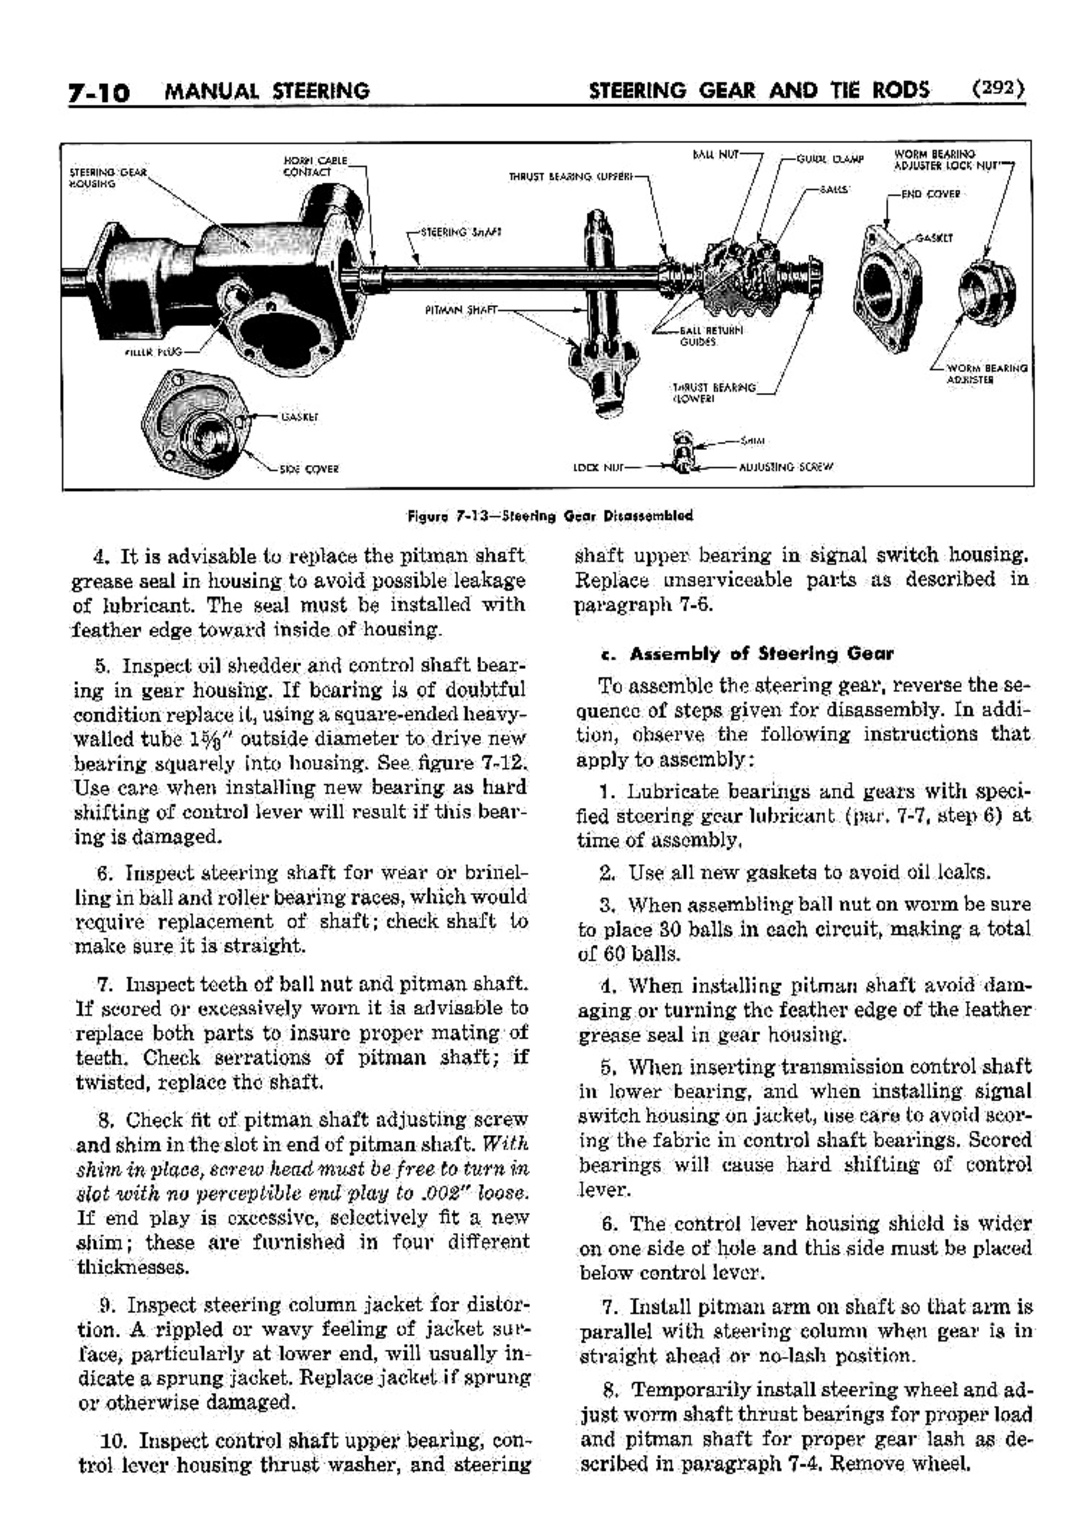 n_08 1952 Buick Shop Manual - Steering-010-010.jpg